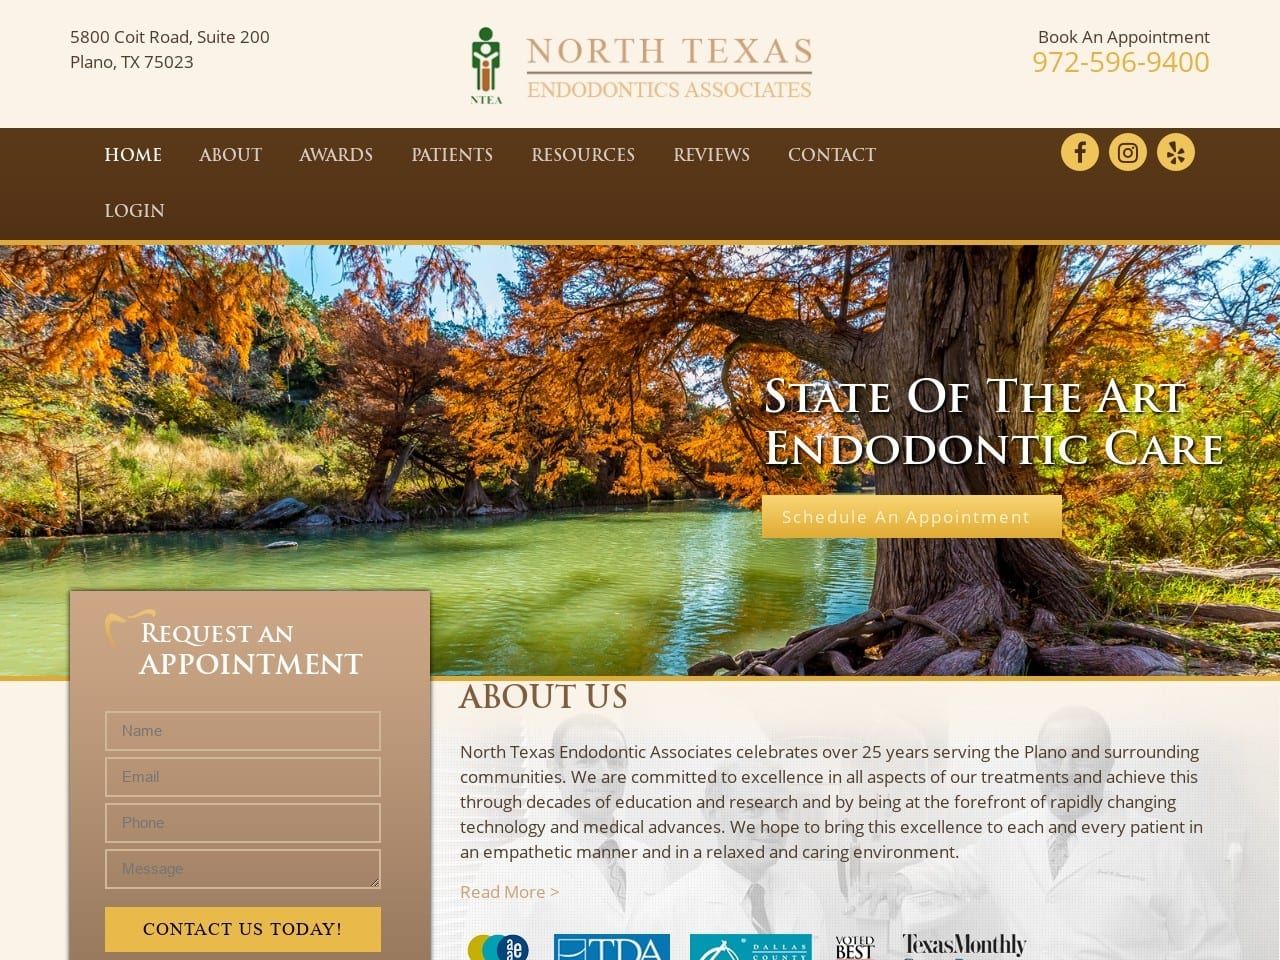 North Texas Endodontic Associates Website Screenshot From Url Ntendo.com